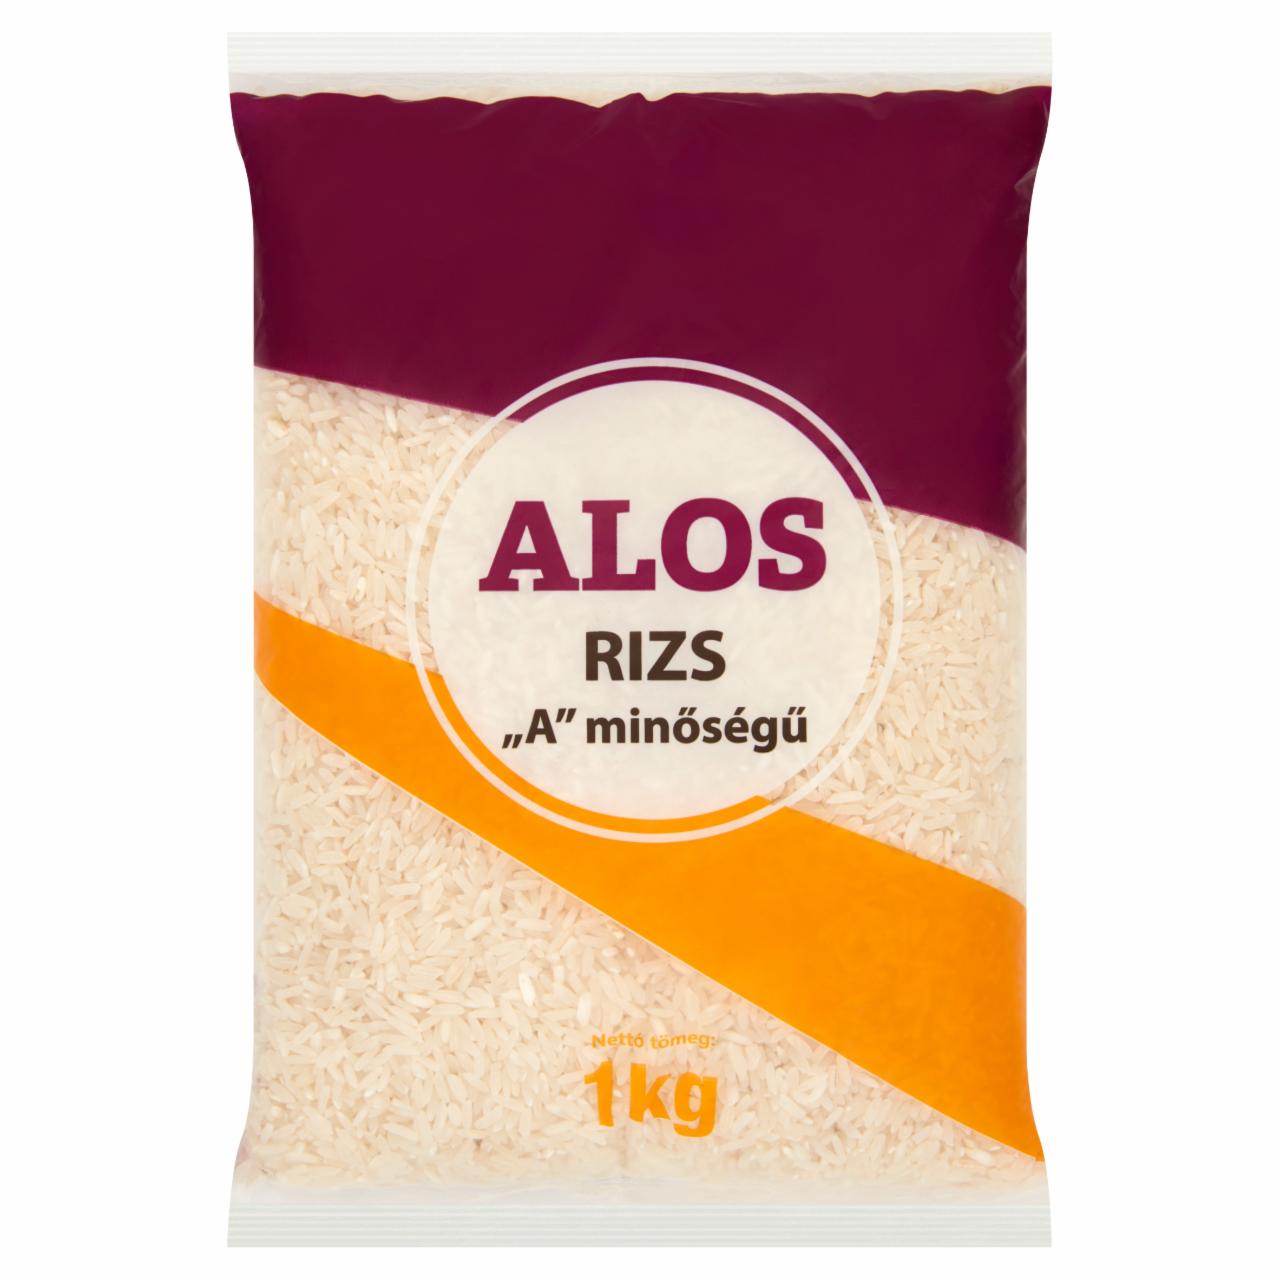 Képek - Alos „A' minőségű rizs 1 kg